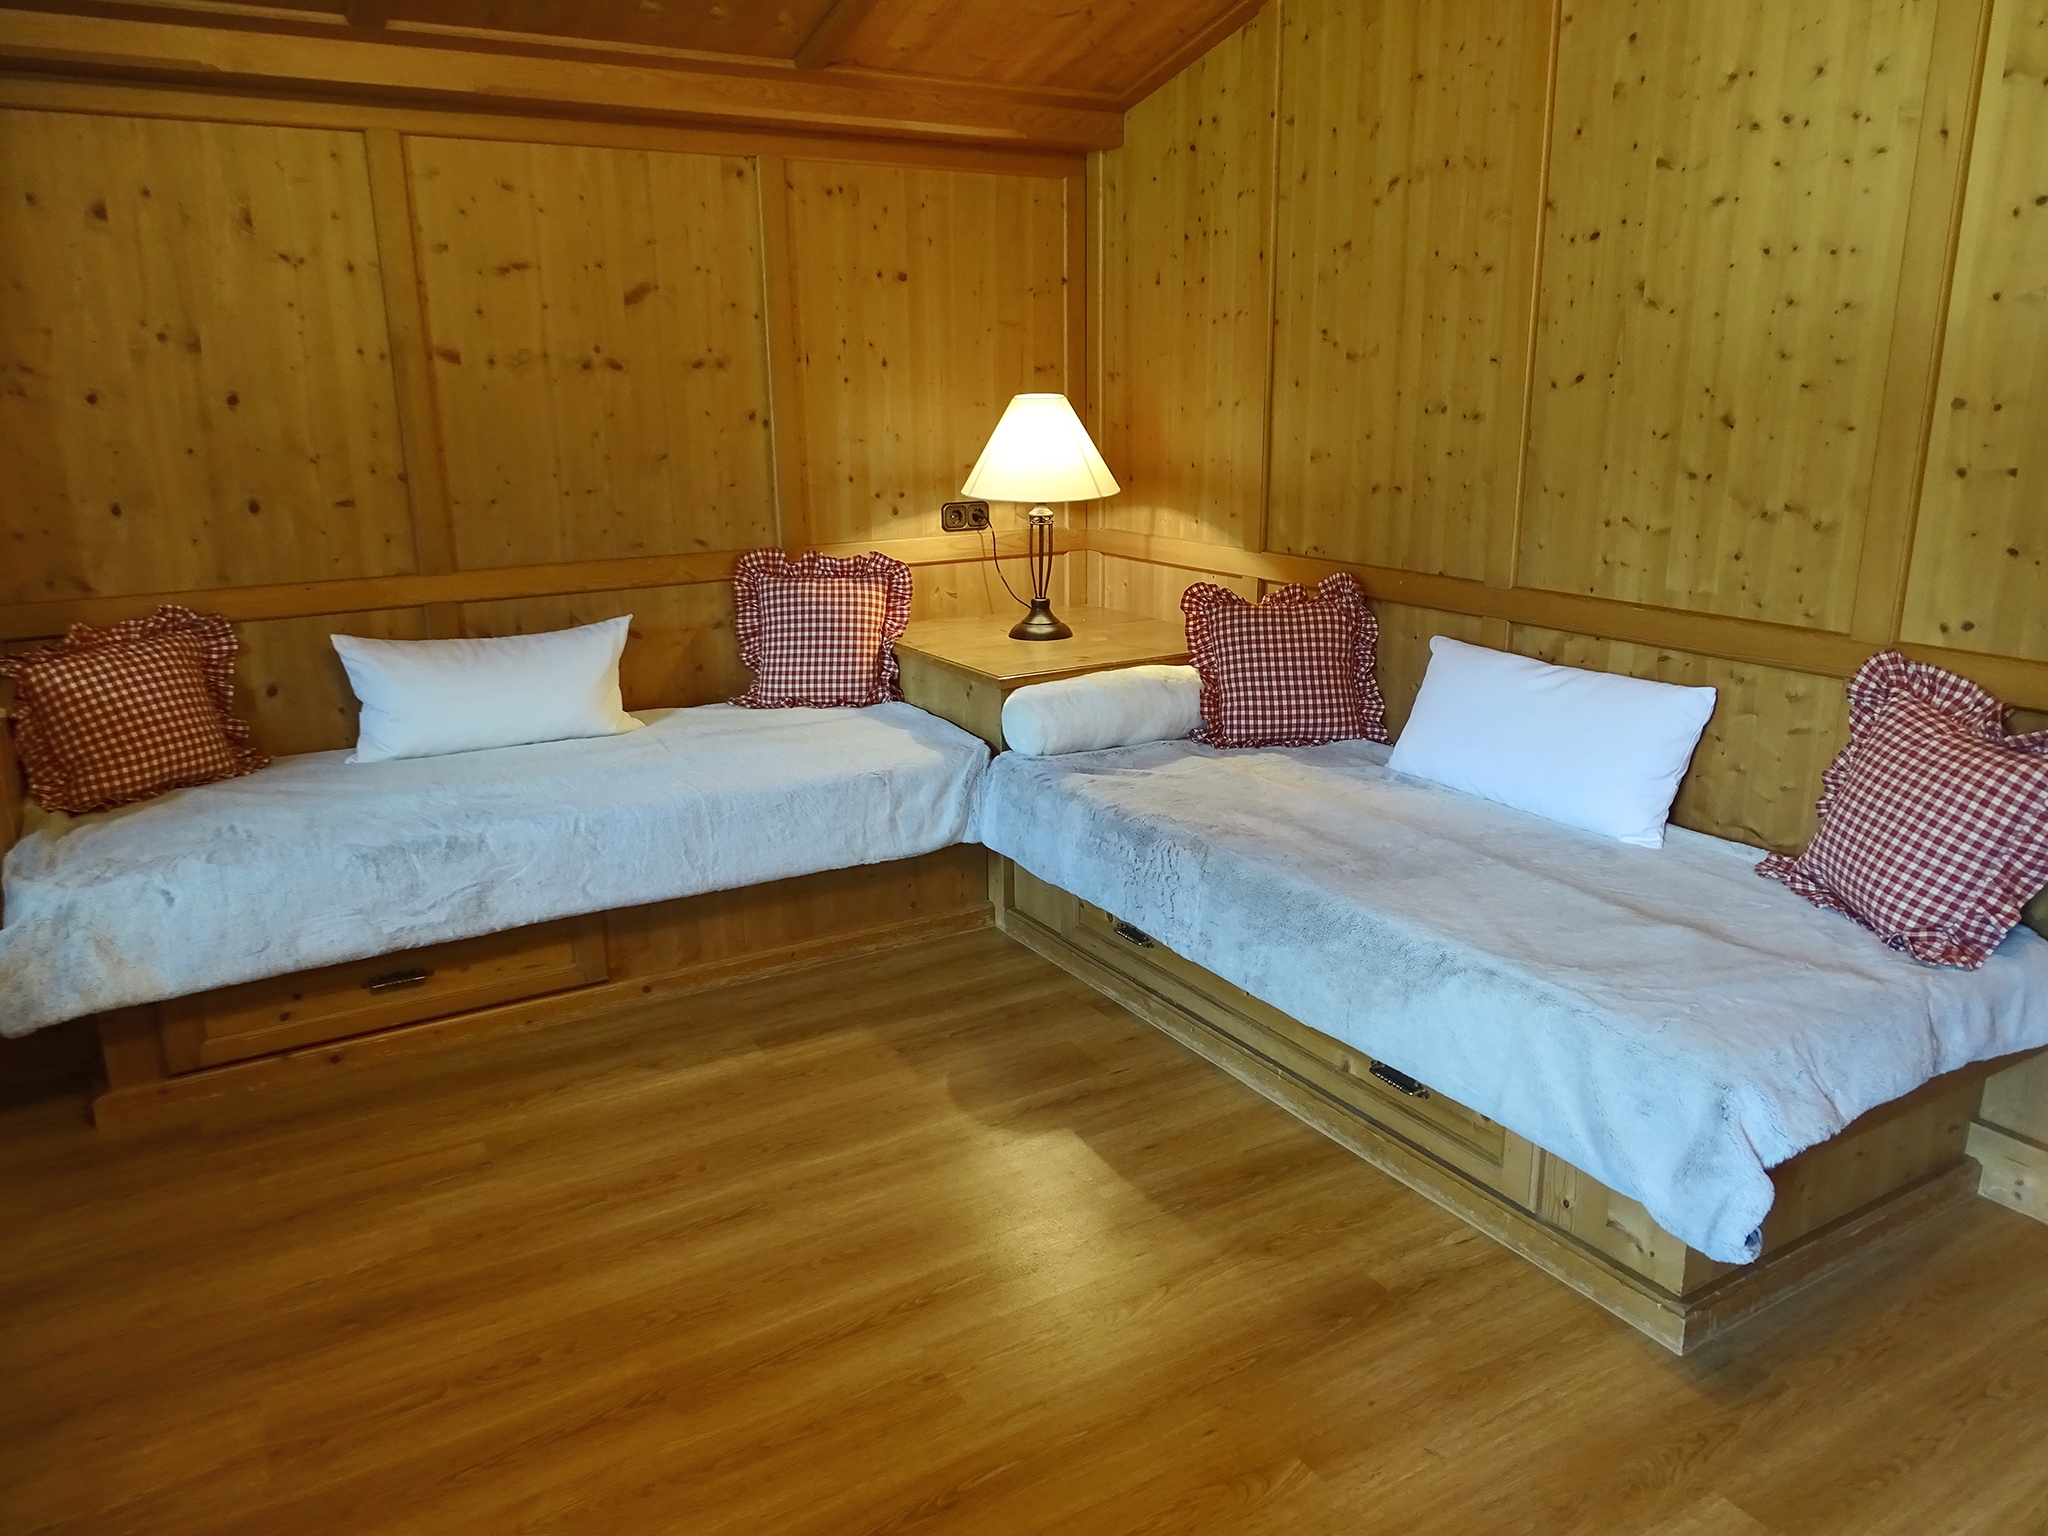 Appartements Windschnur: Appartement Arnika Komfort für 4 Personen - 2 Einzelbetten im Wohnbereich (Beispiel)